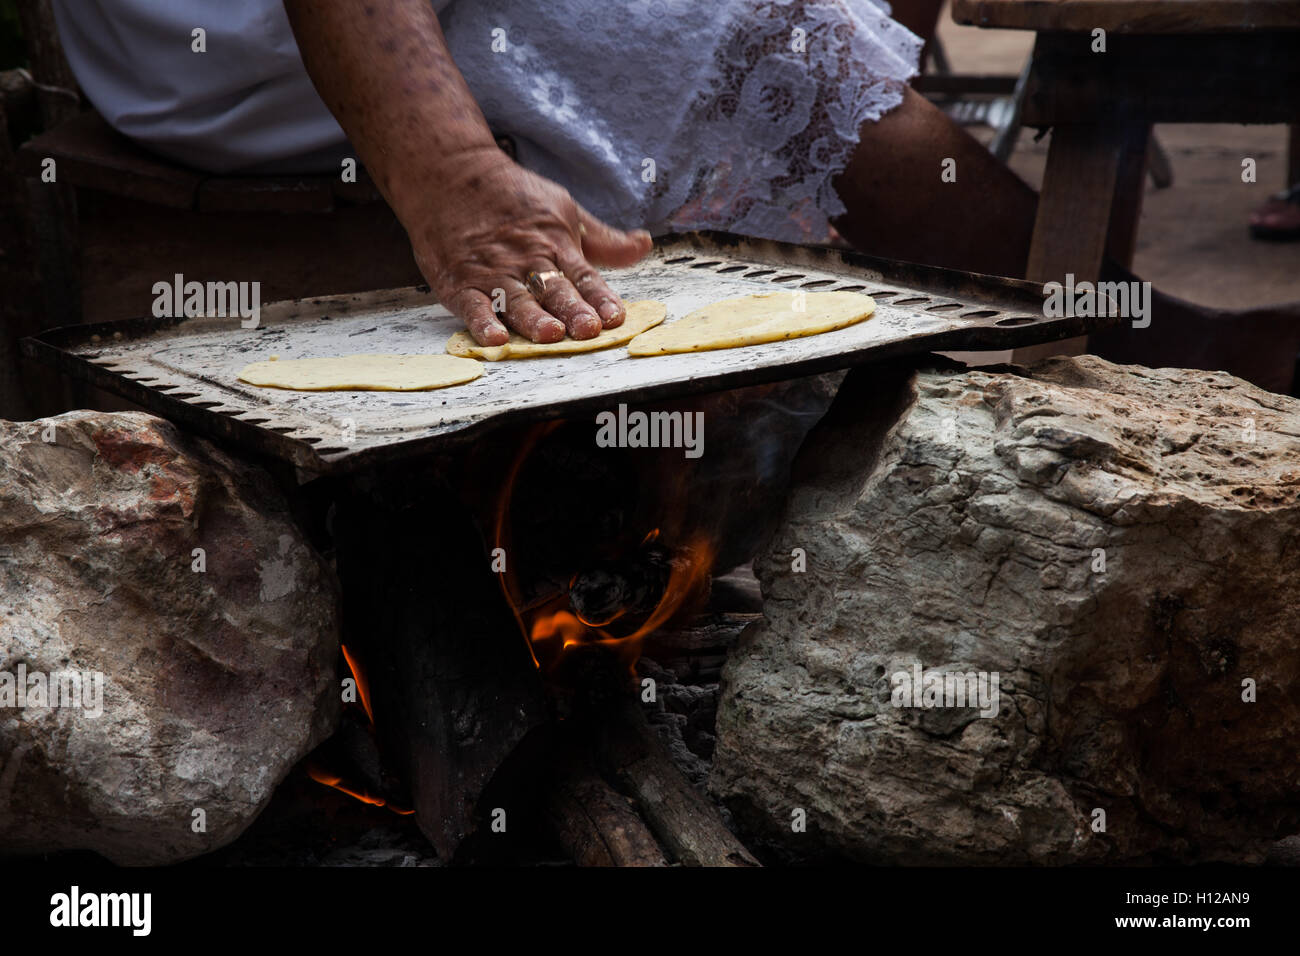 https://c8.alamy.com/compes/h12an9/una-mujer-mayor-haciendo-tortillas-en-una-placa-de-metal-llamado-comal-al-ser-calentada-por-lena-en-el-concurso-de-altar-pixan-hanal-h12an9.jpg